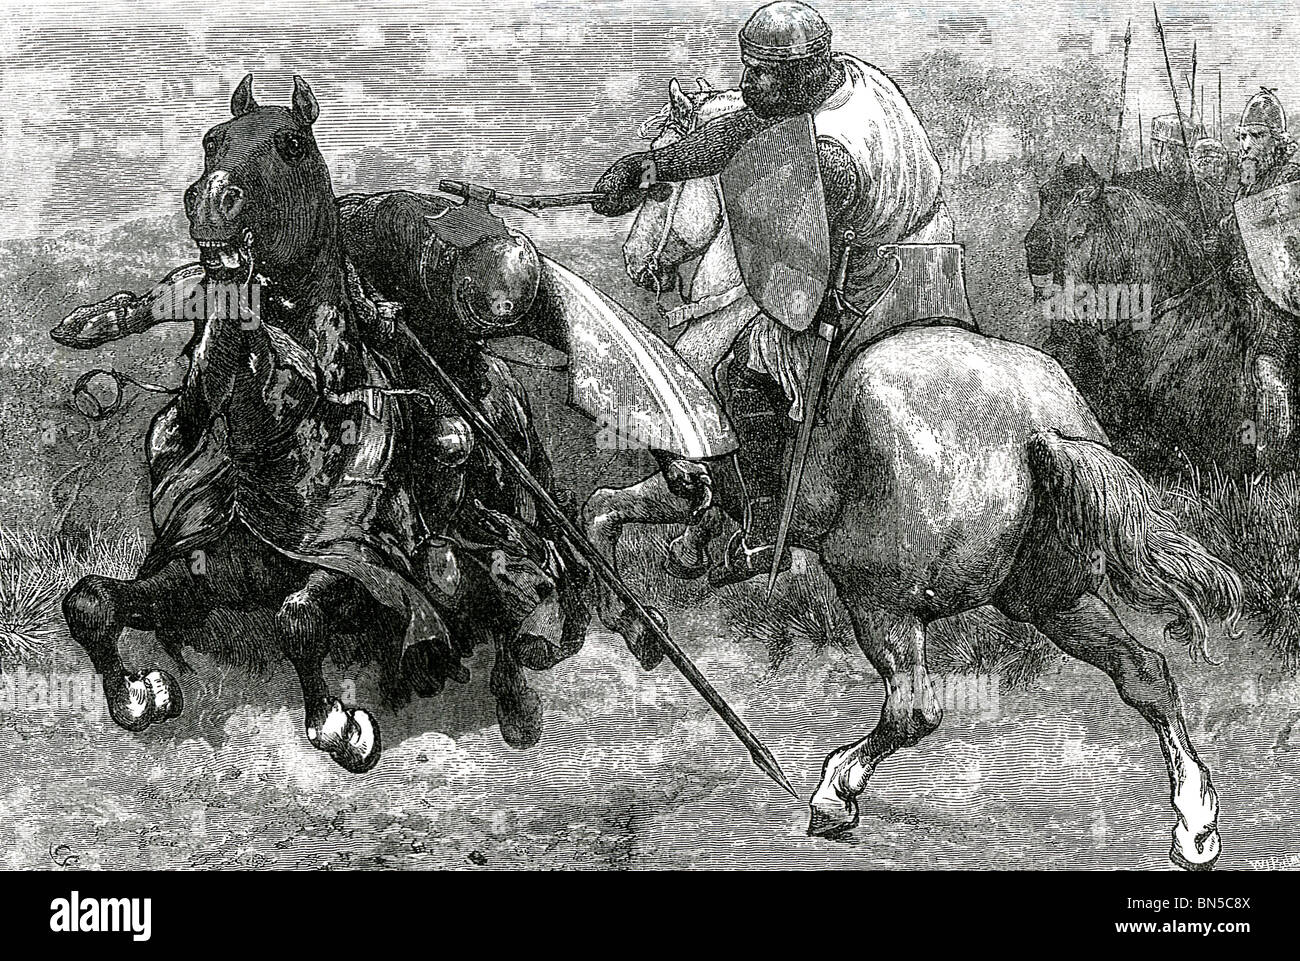 ROBERT THE BRUCE King of Scotland tötet einen englischen Ritter in der Schlacht von Bannockburn 24 Juni 1314 Stockfoto